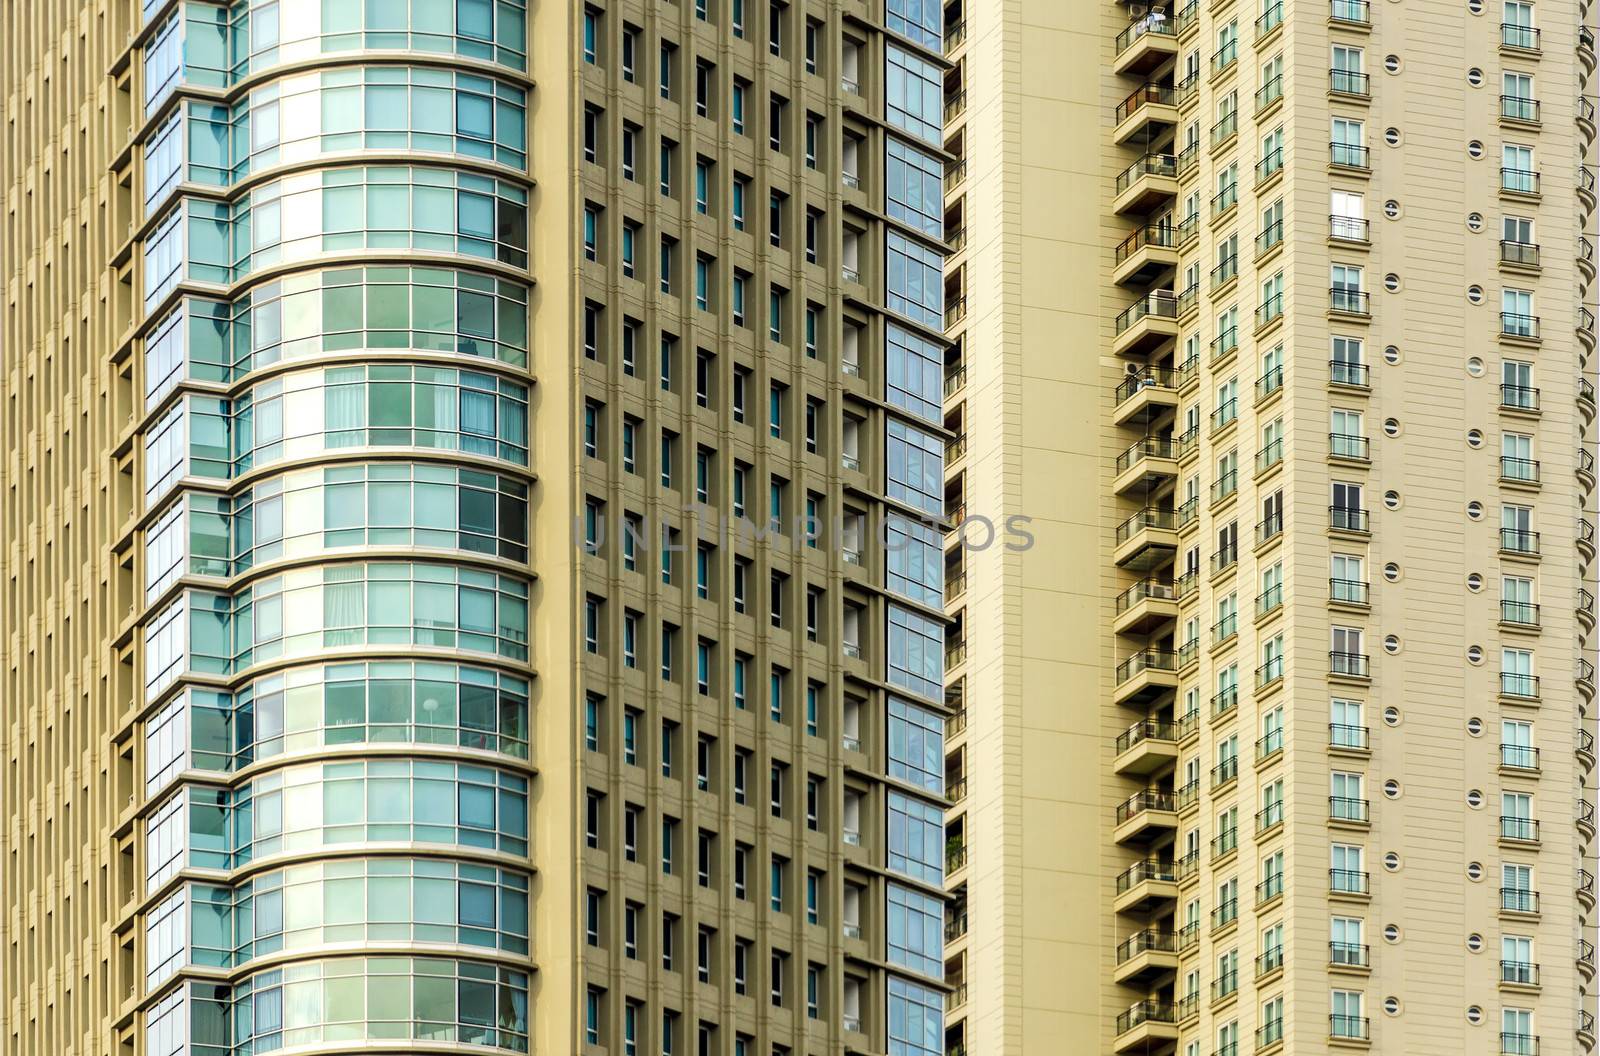 Skyscraper Closeup by jkraft5